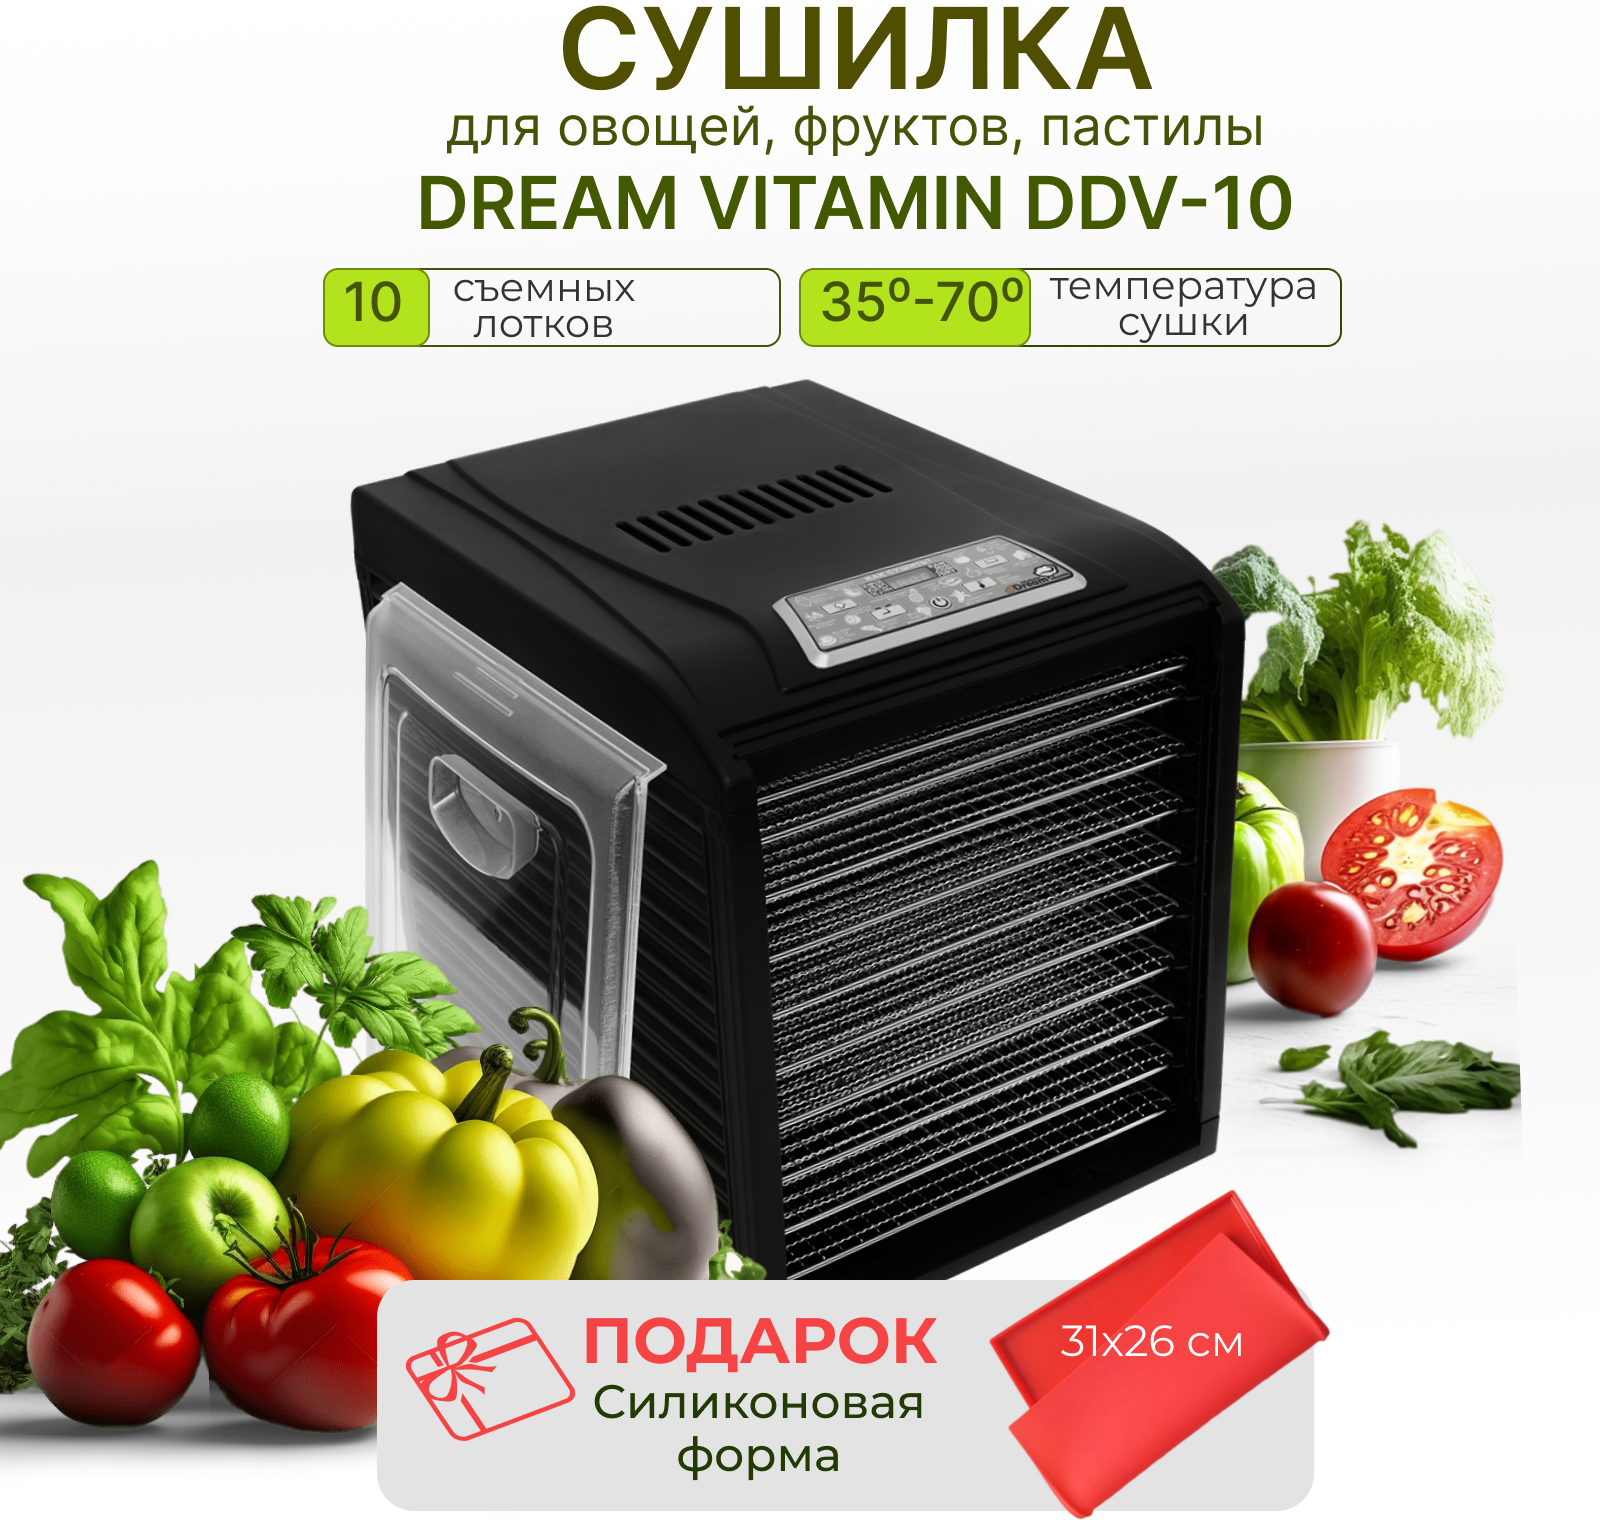 Дегидратор Dream Vitamin DDV-10 черный (10 поддонов из нержавеющей стали) + силиконовая форма в подарок - фотография № 1